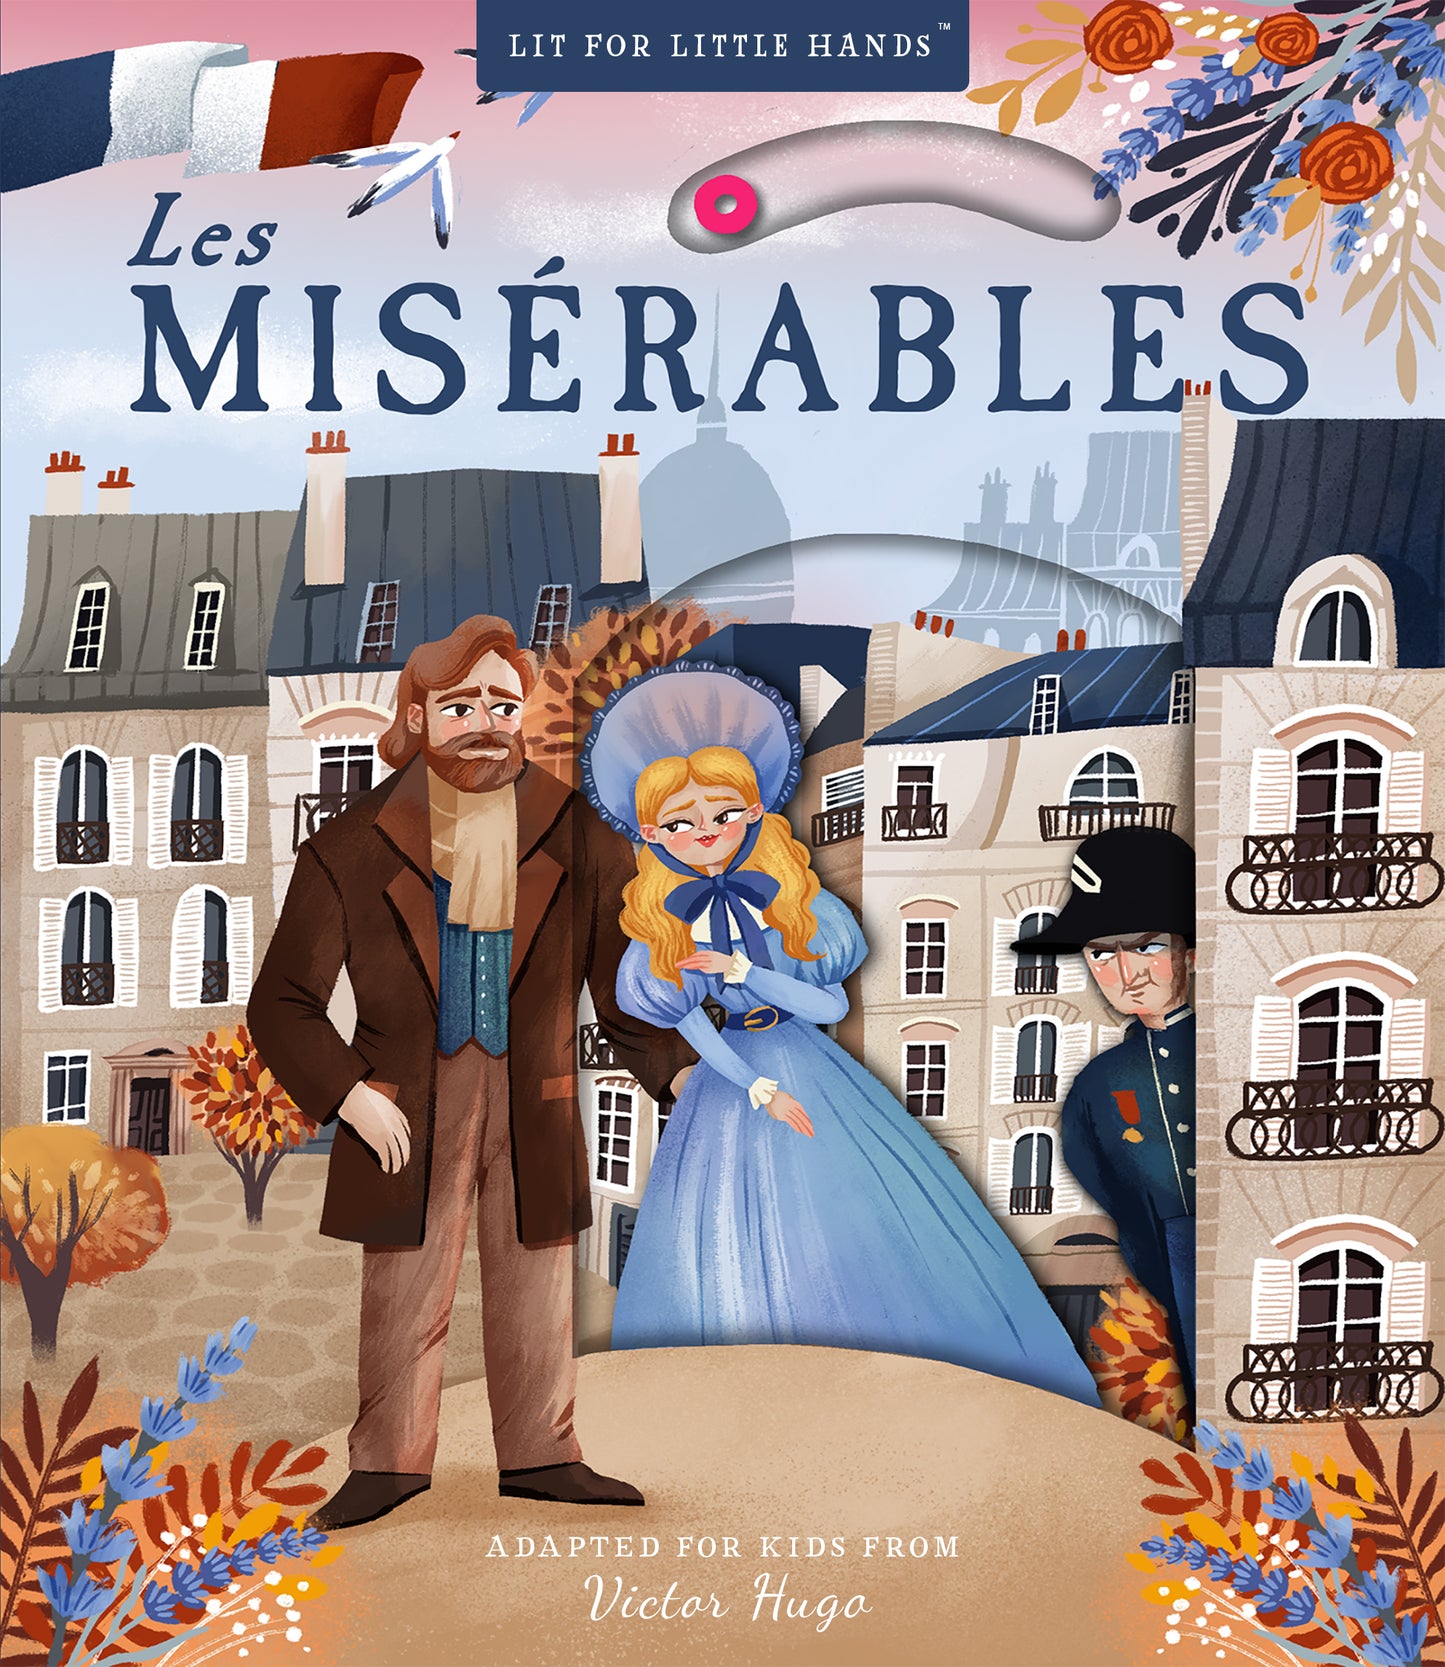 Book - Lit for Little Hands: Les Miserables